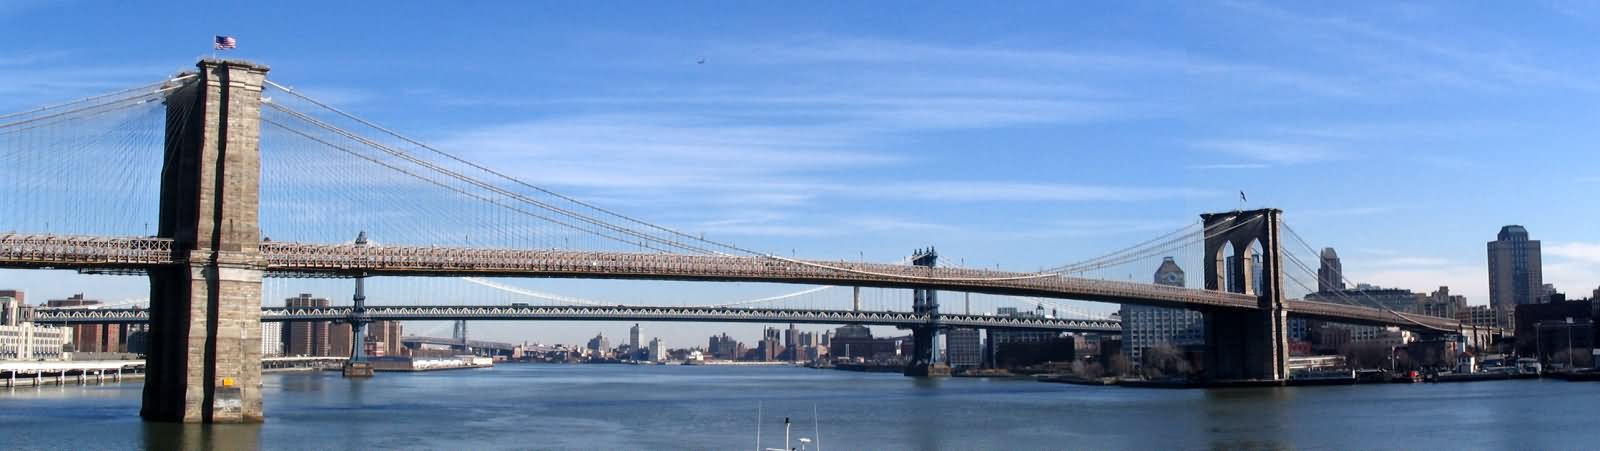 Amazing Panorama View Of Brooklyn Bridge